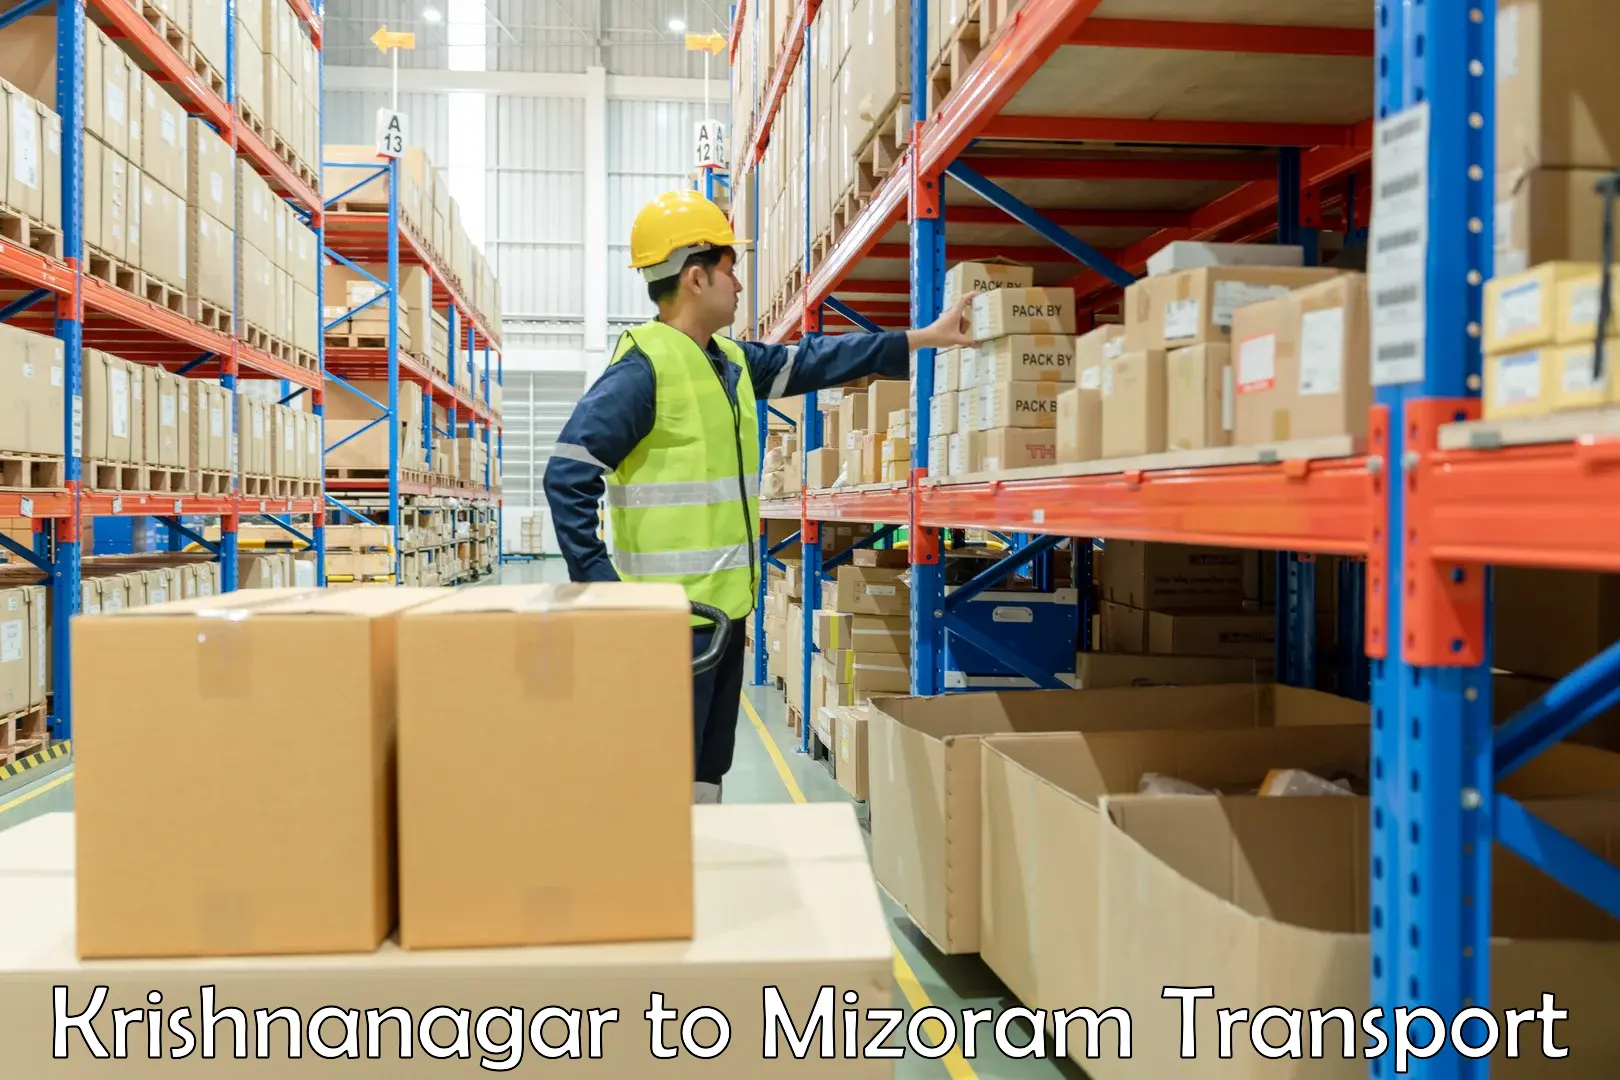 Shipping partner Krishnanagar to Mizoram